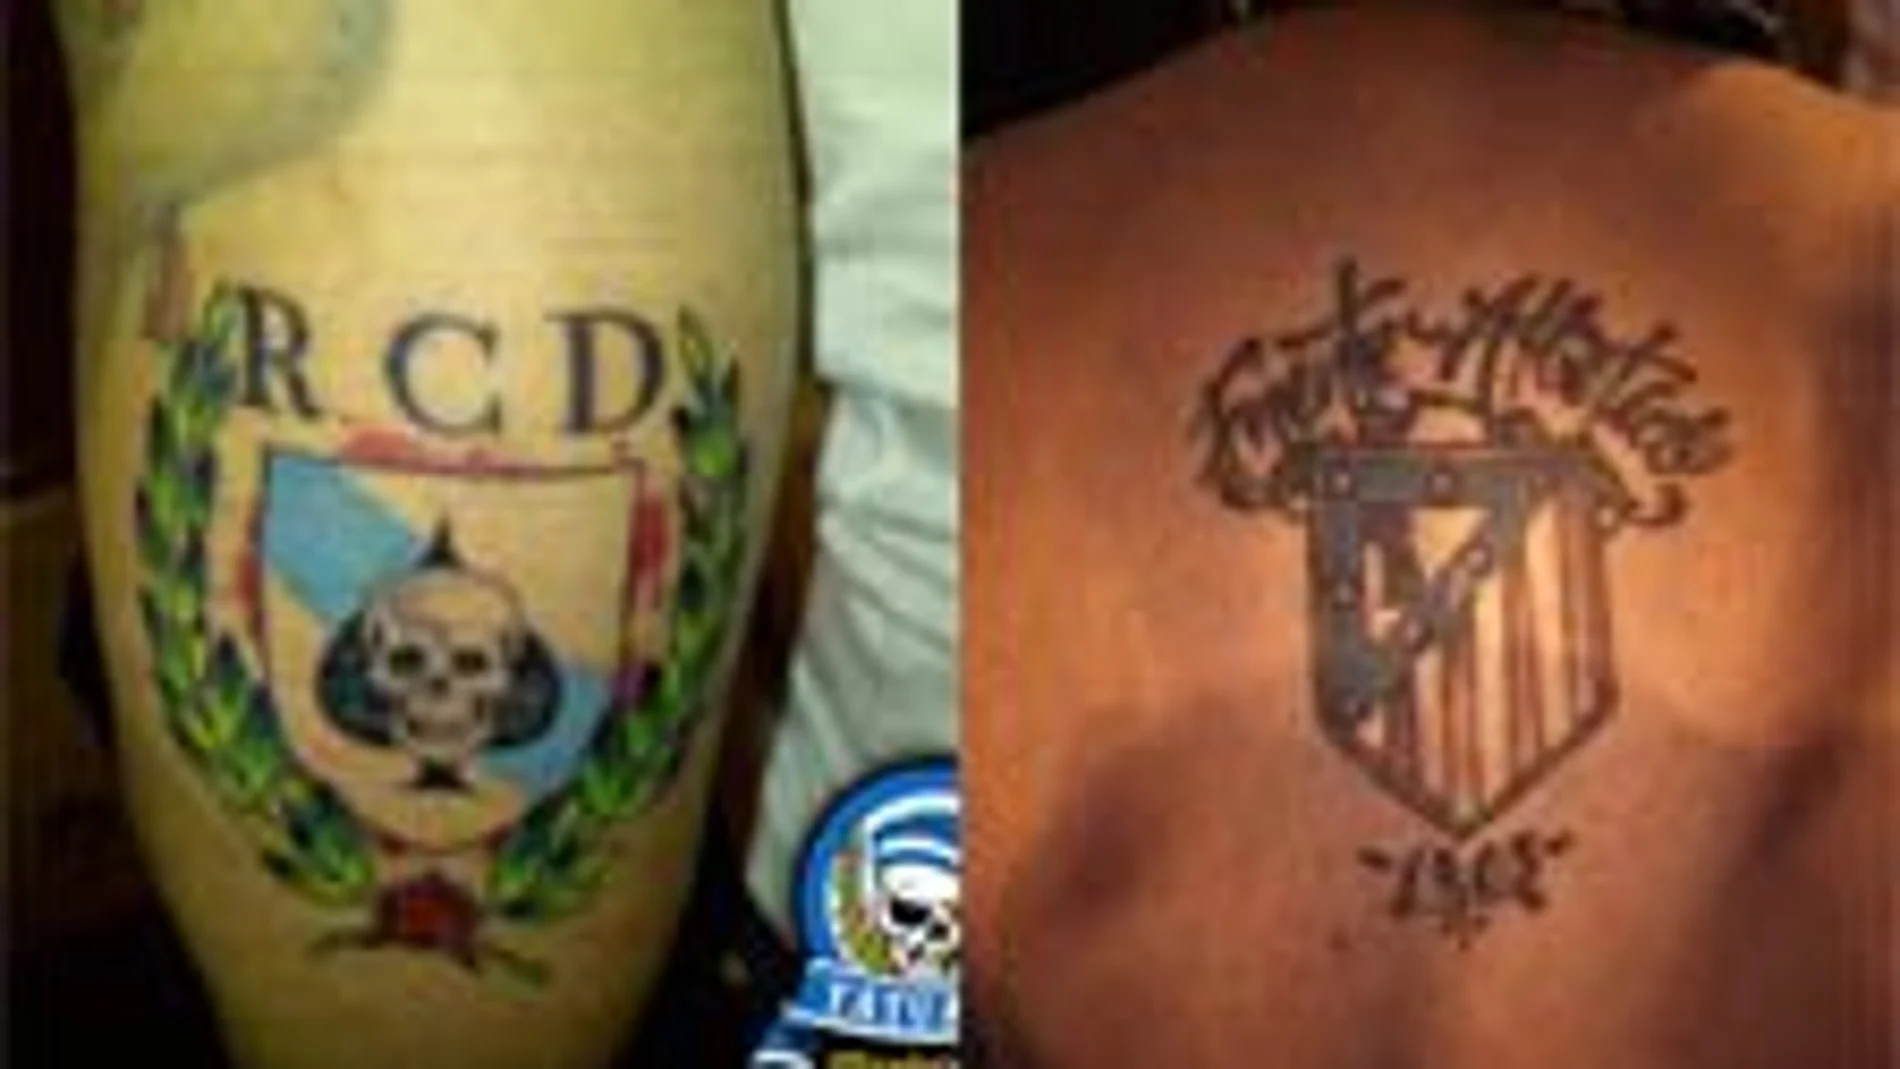 Tatuajes de ambos grupos